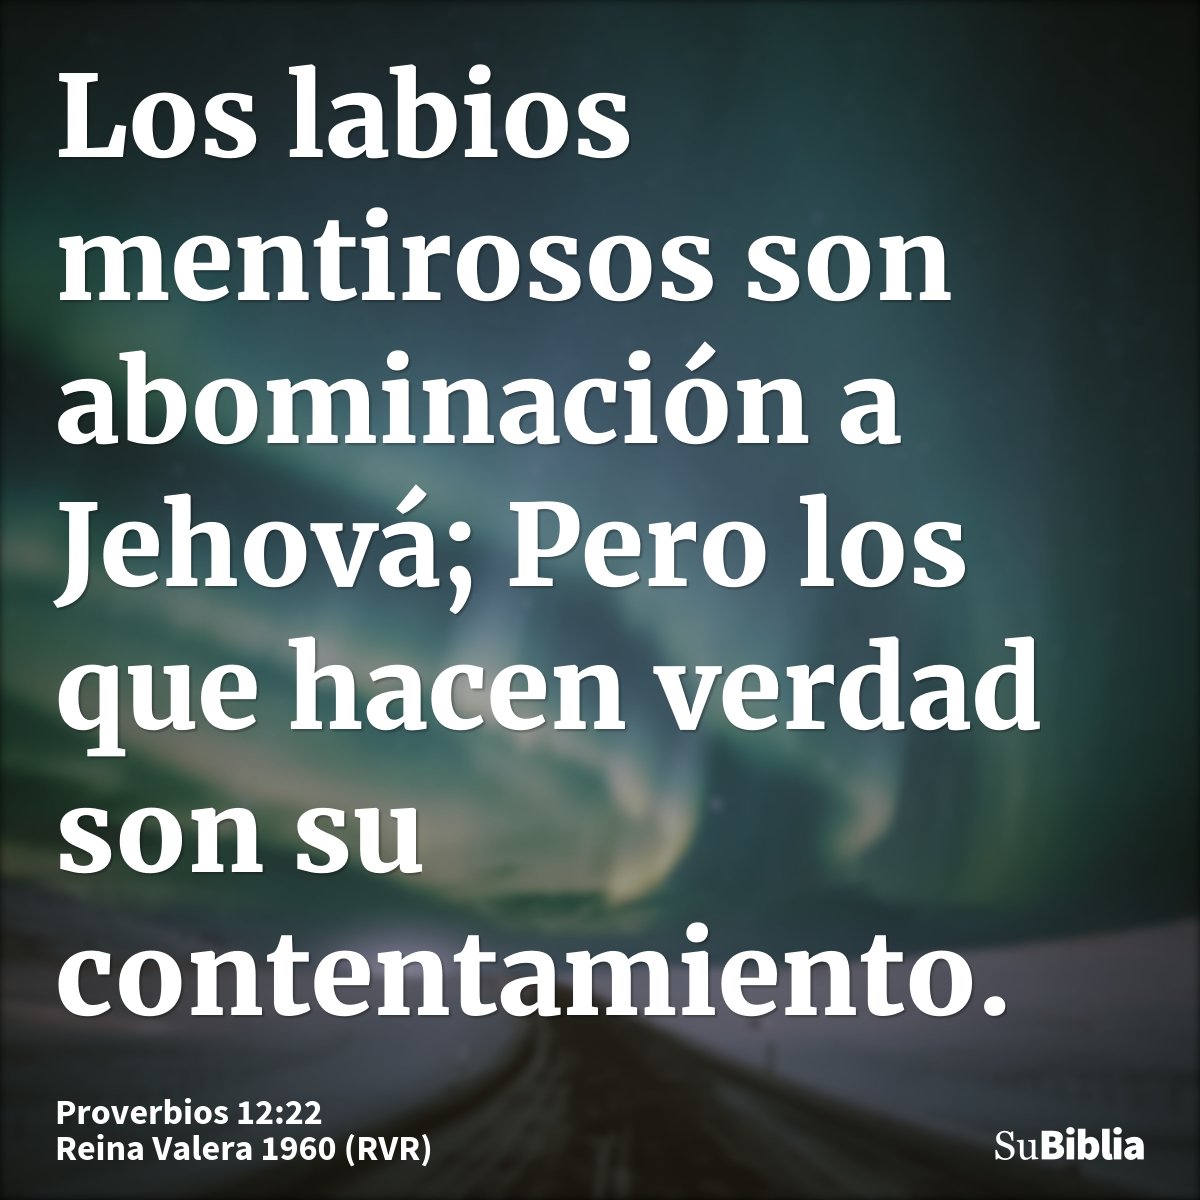 Los labios mentirosos son abominación a Jehová; Pero los que hacen verdad son su contentamiento.